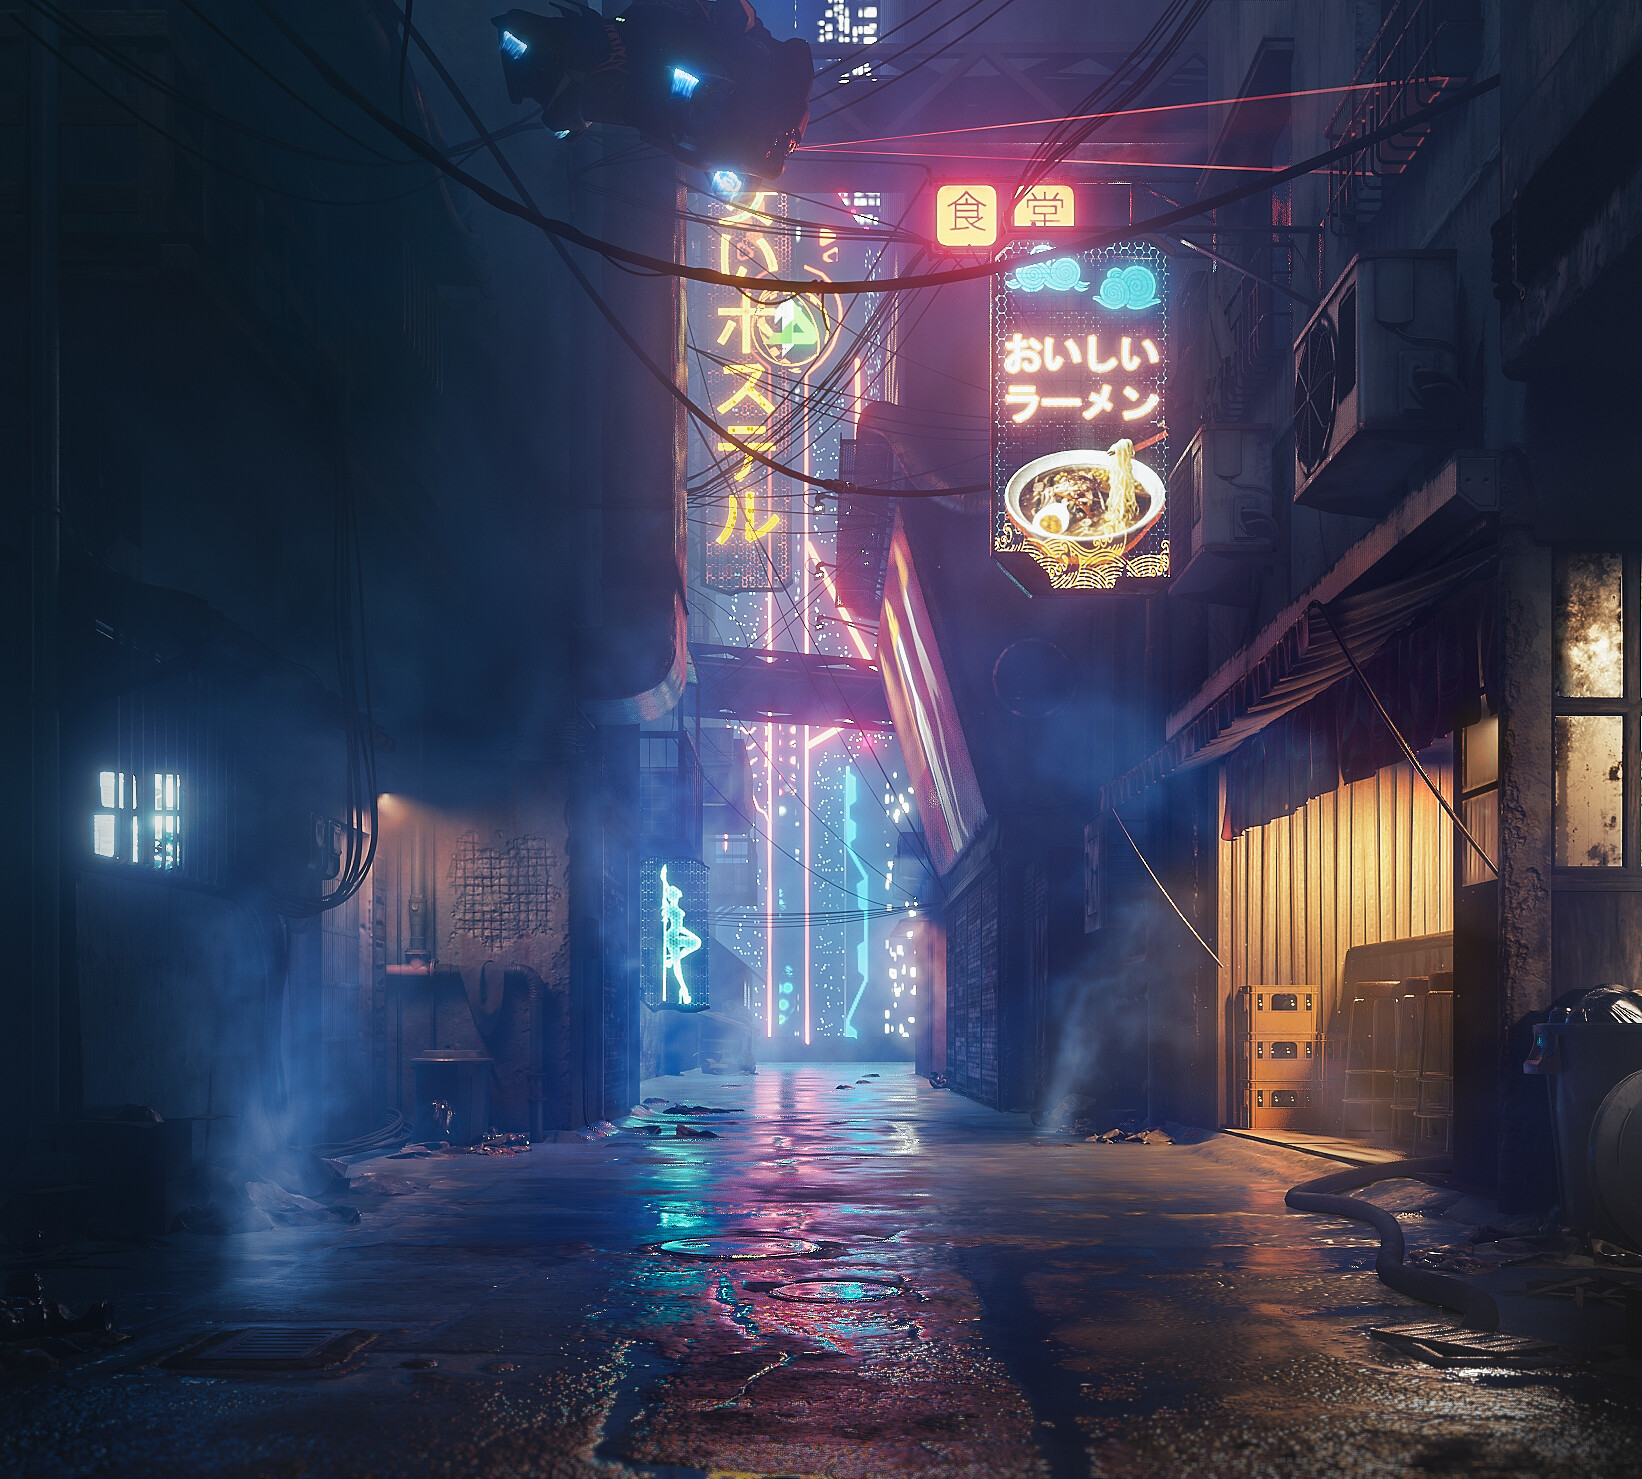 ArtStation - Cyberpunk alley